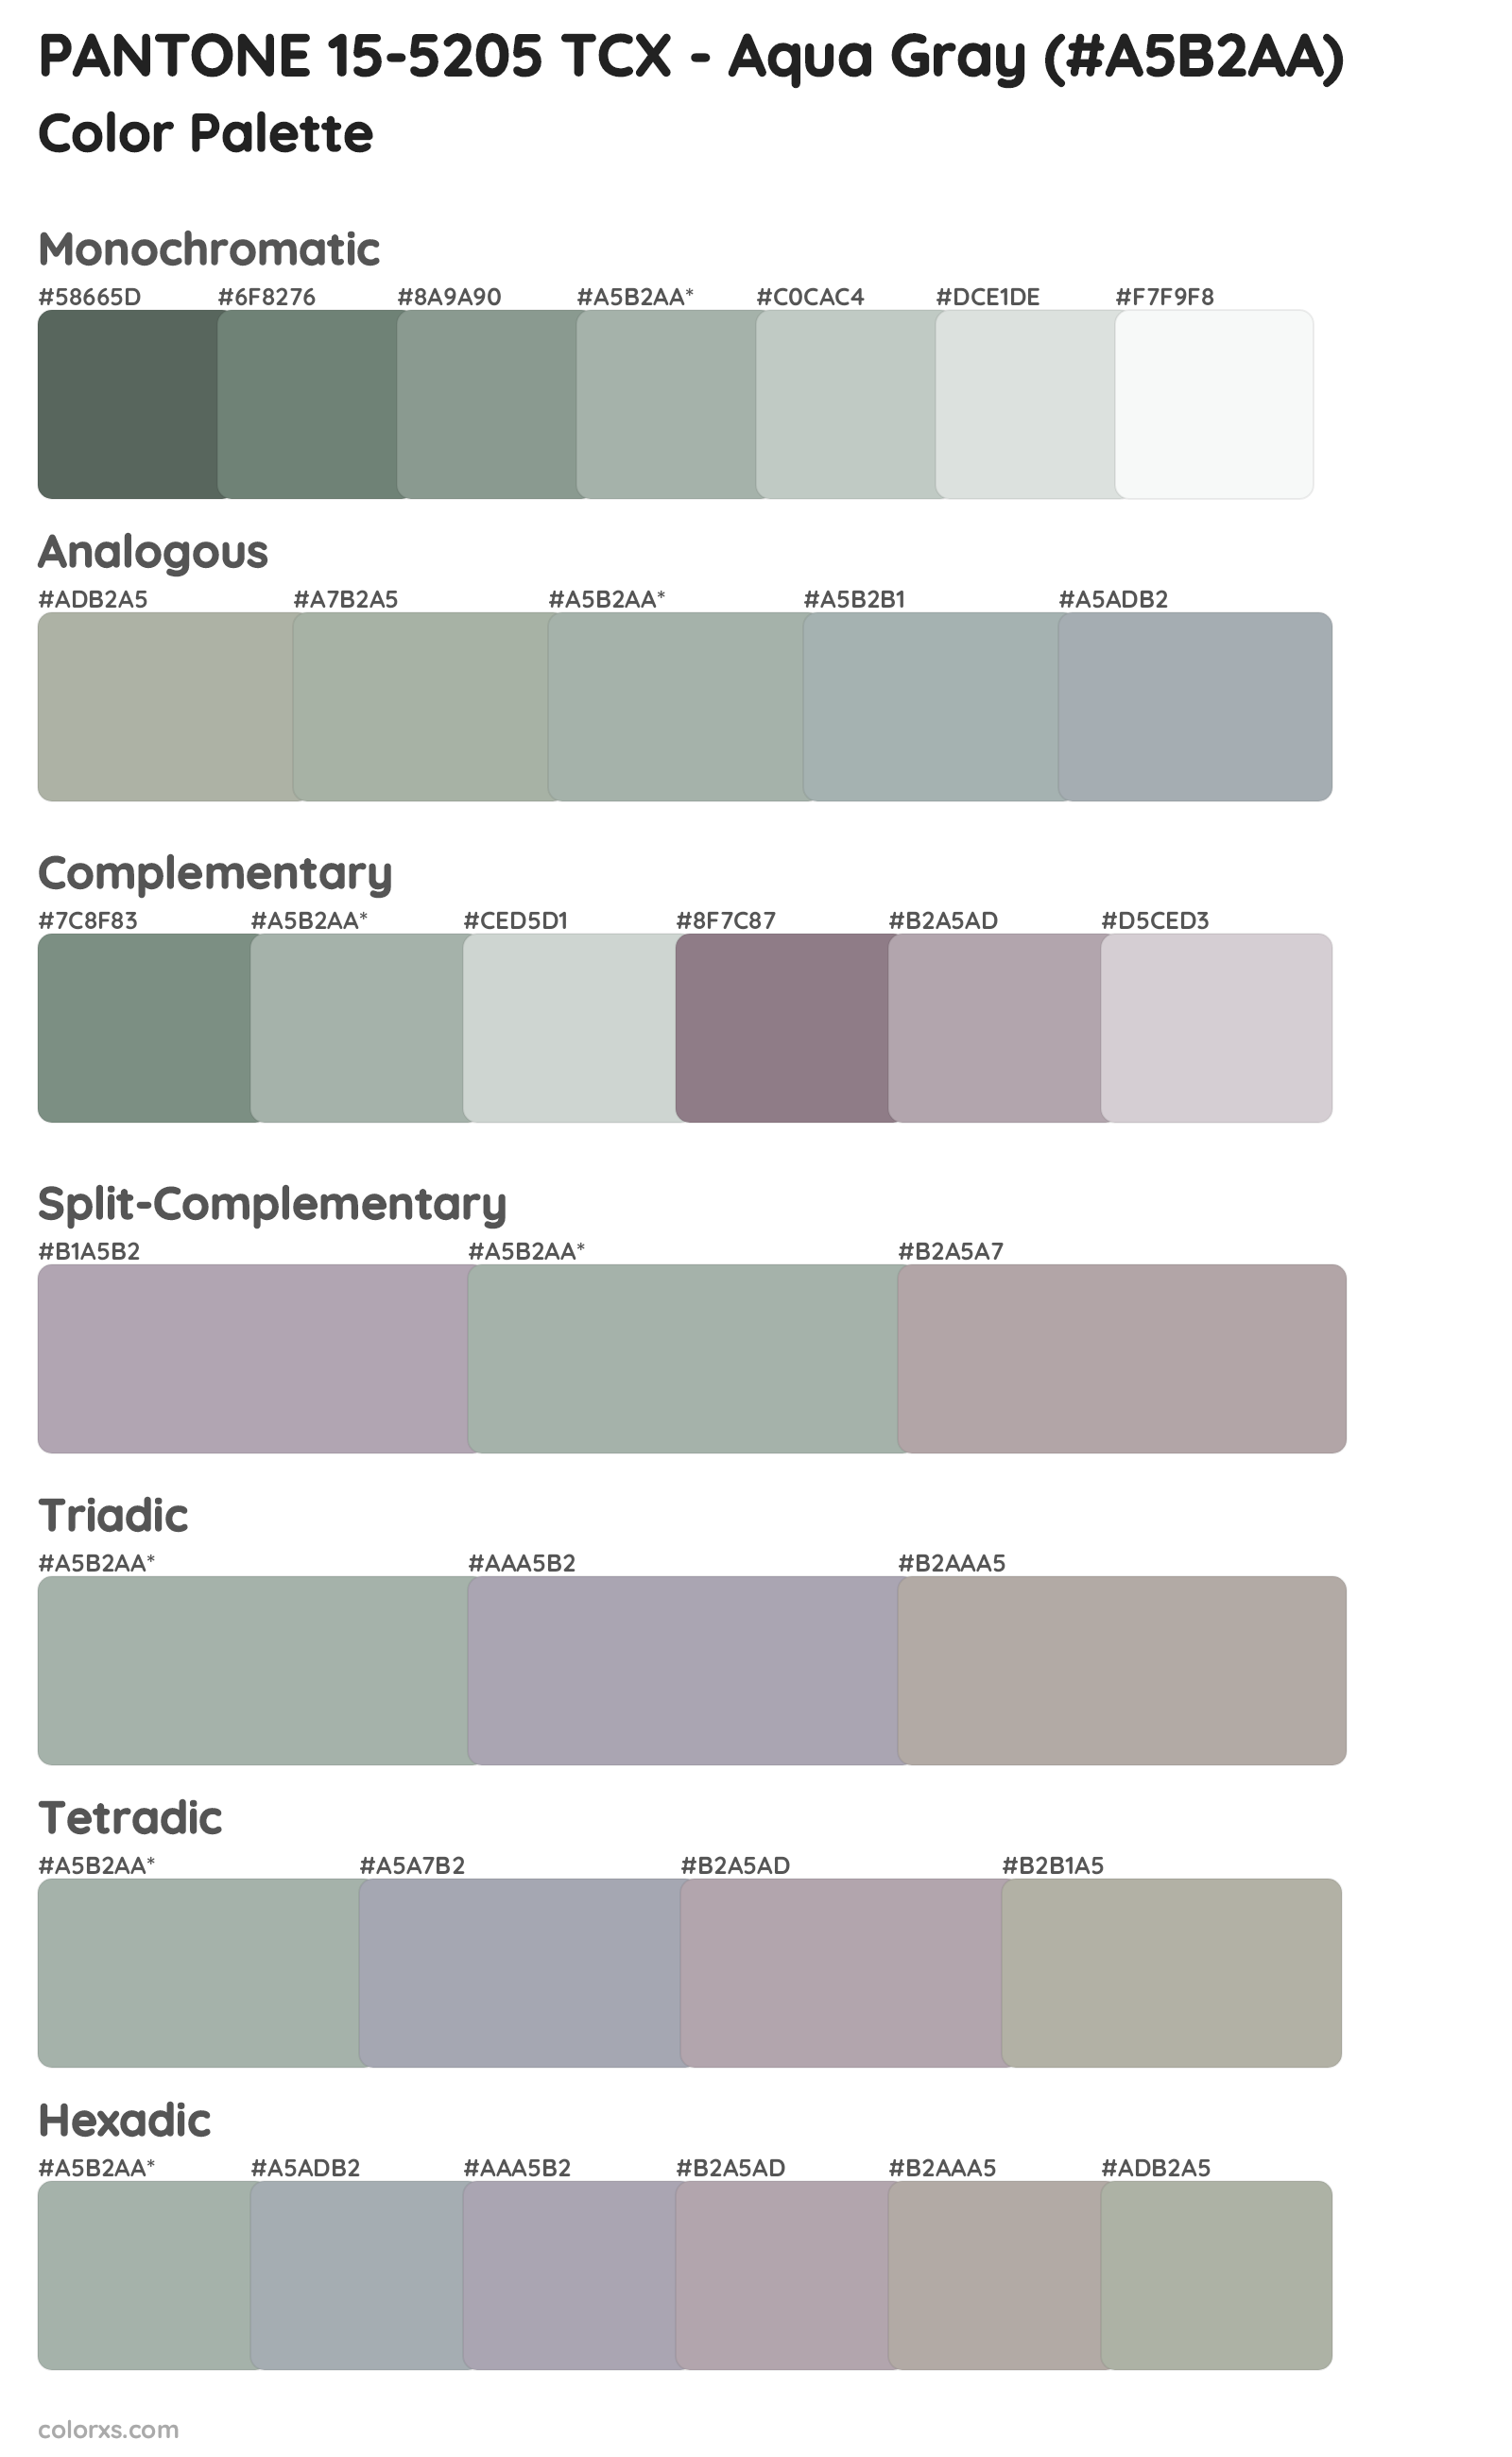 PANTONE 15-5205 TCX - Aqua Gray Color Scheme Palettes